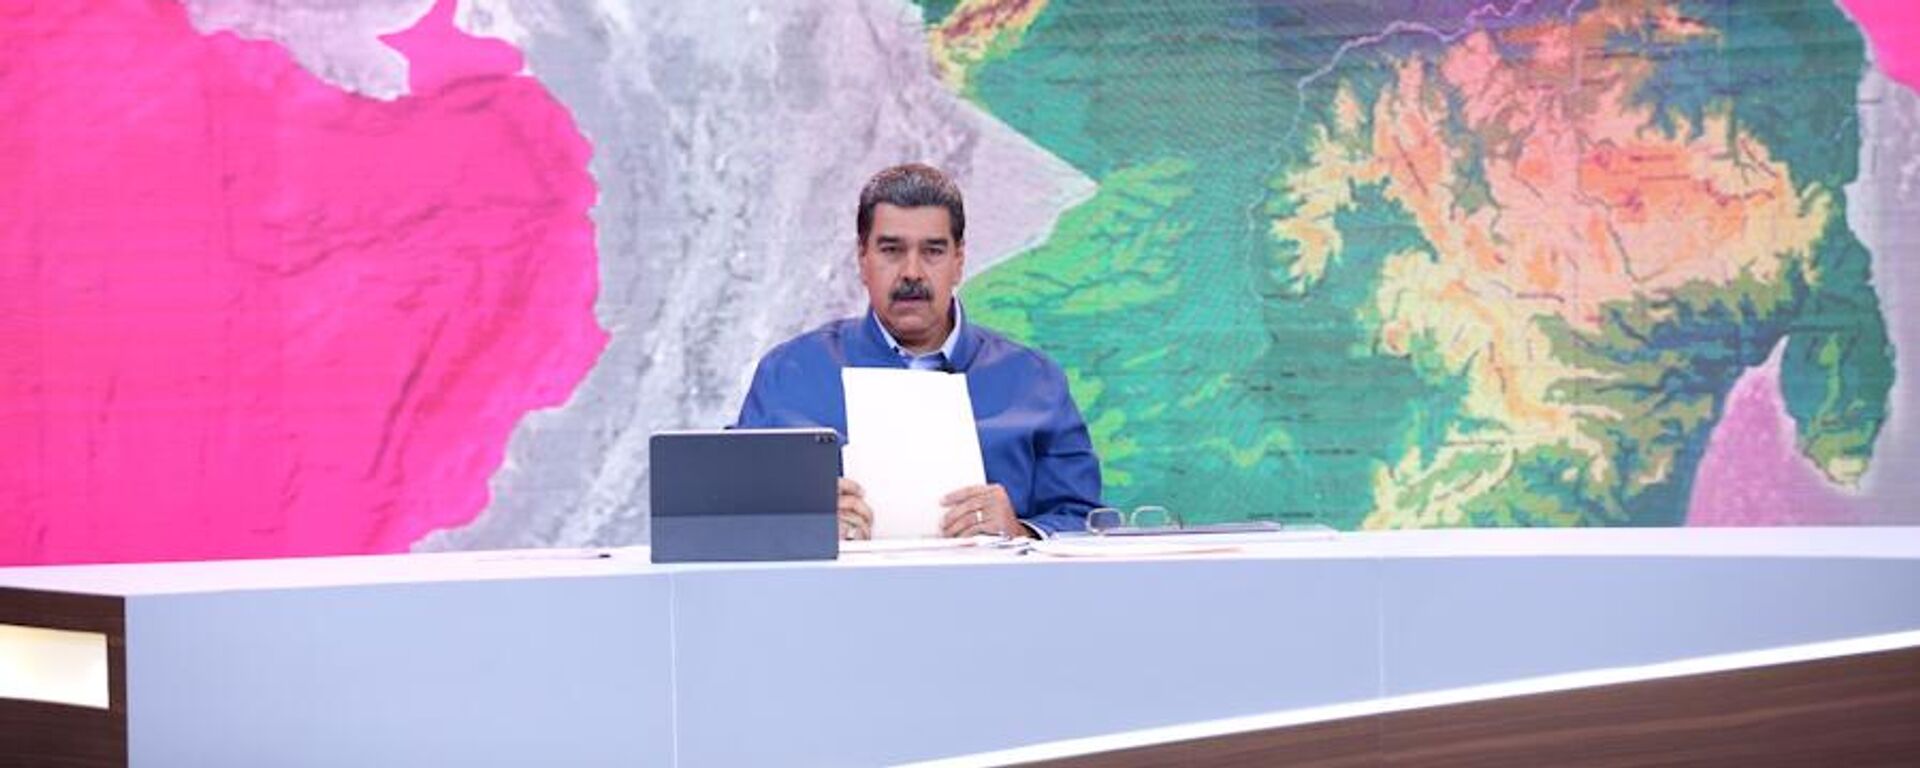 El presidente Nicolás Maduro aborda el tema del Esequibo en septiembre de 2023 - Sputnik Mundo, 1920, 25.10.2023